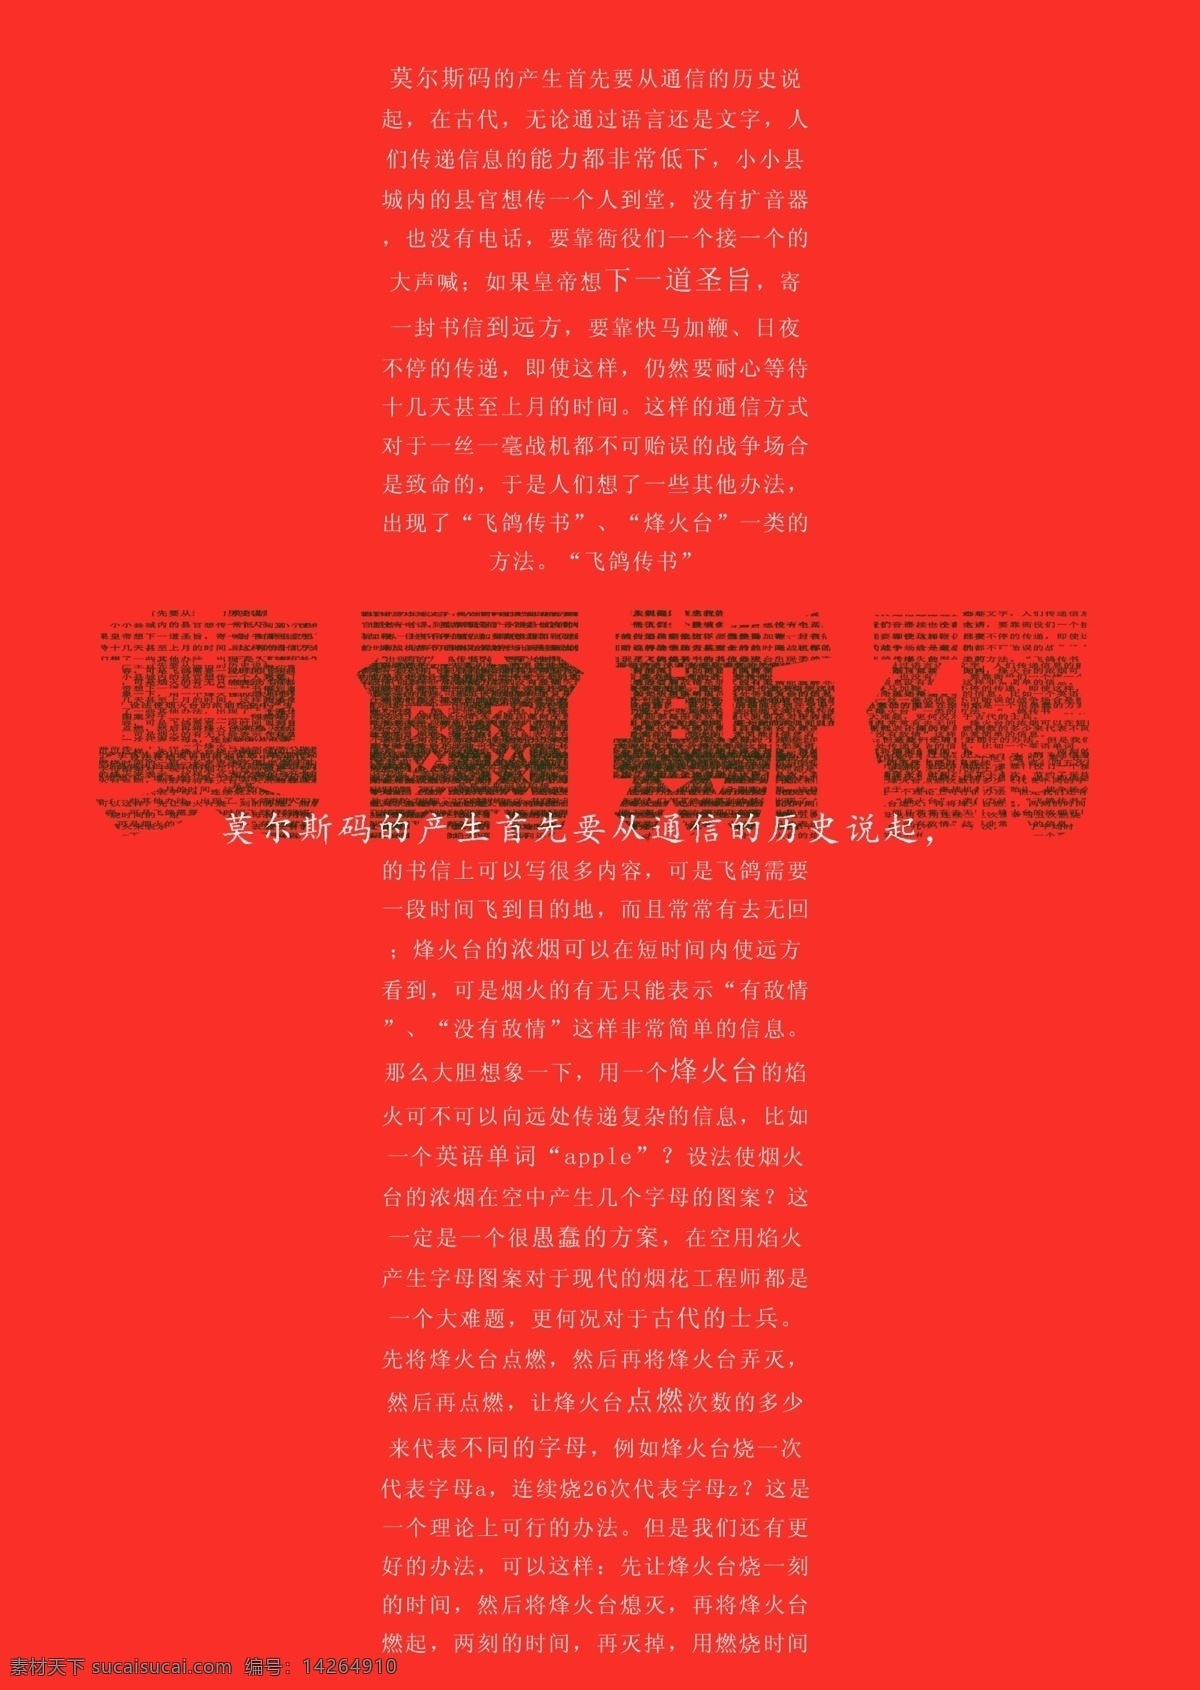 中文 杂志 版式 分层 广告设计模板 排版 其他模版 文字 源文件 莫斯密码 画册 其他画册整套